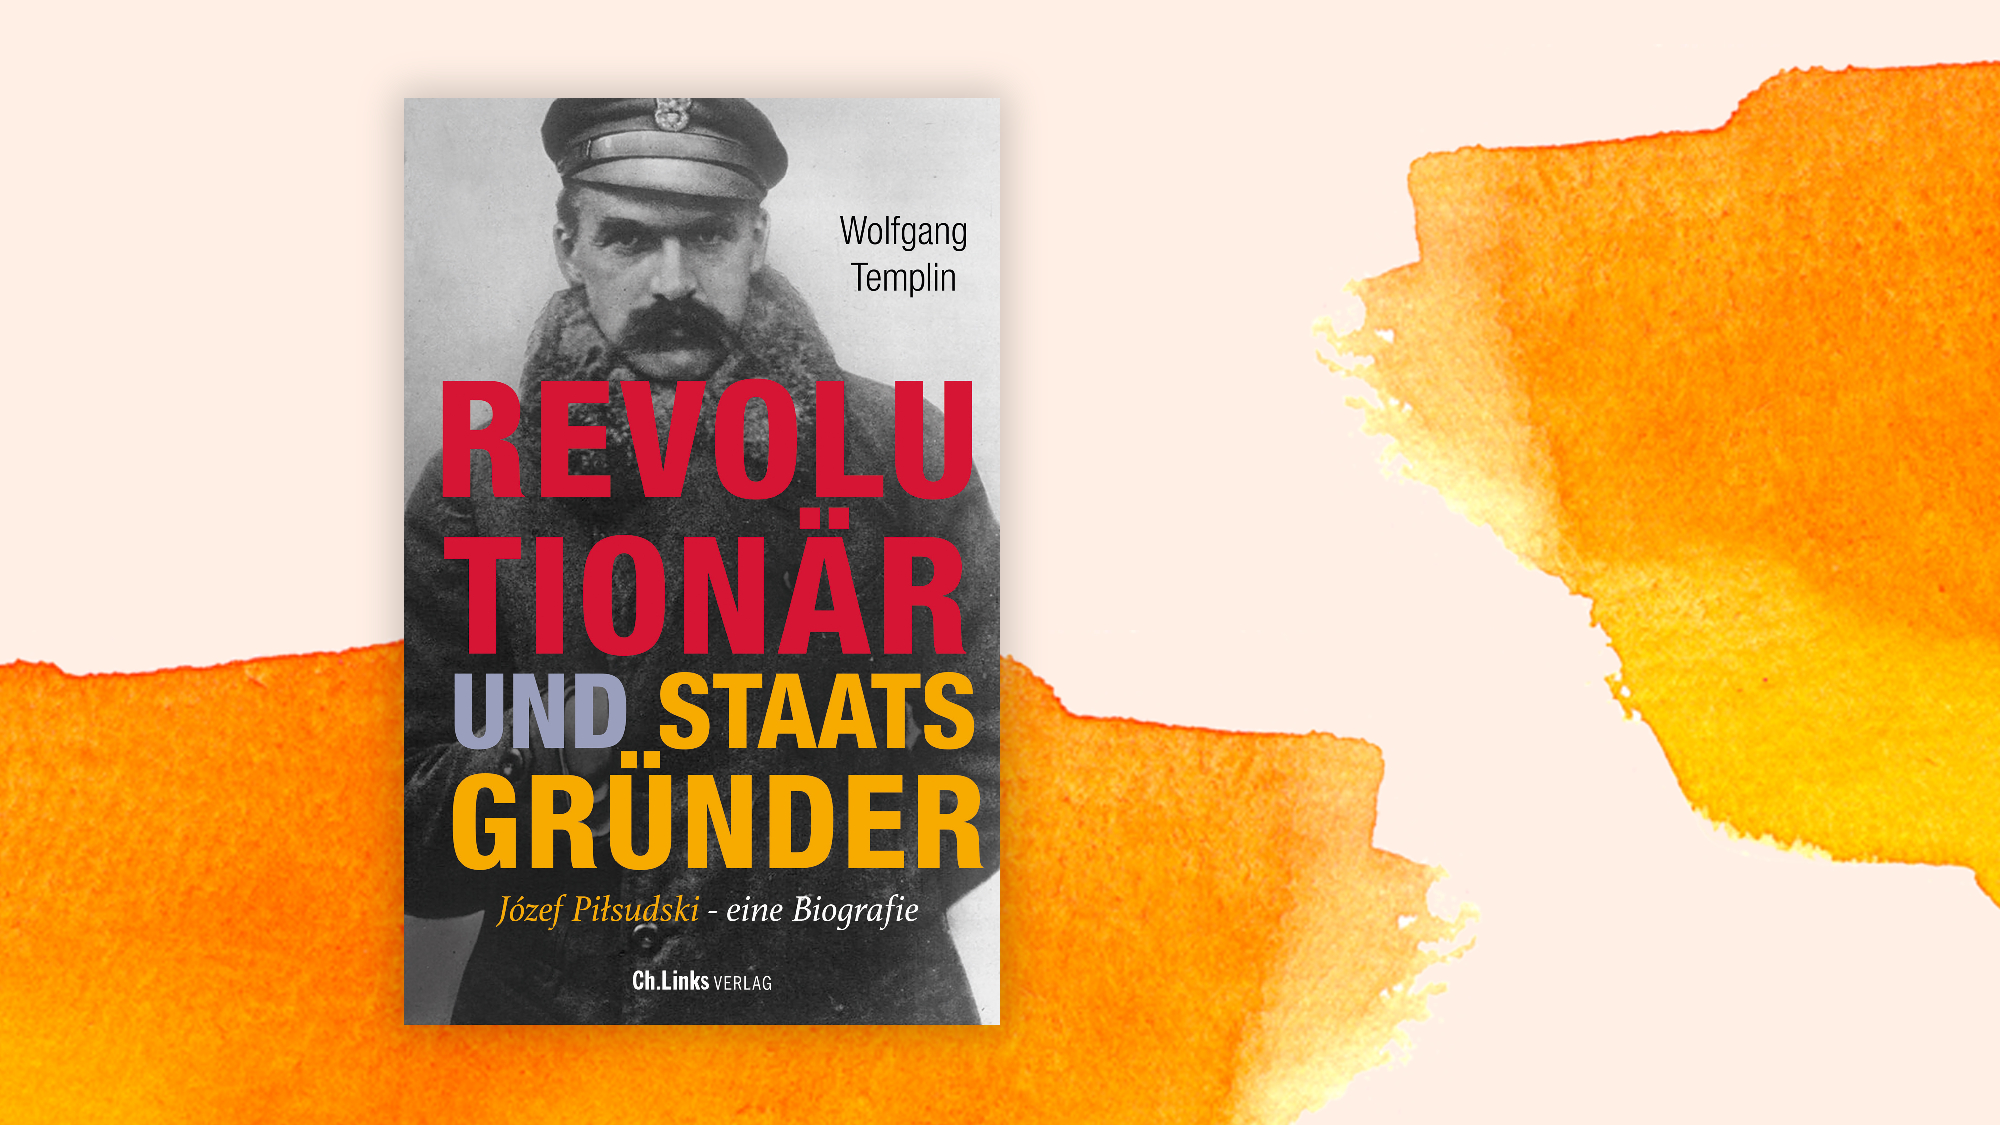 Wolfgang Templin: „Rewolucjonista i założyciel państwa. Josef Piłsudski. Biografia” – polski mąż stanu XX wieku